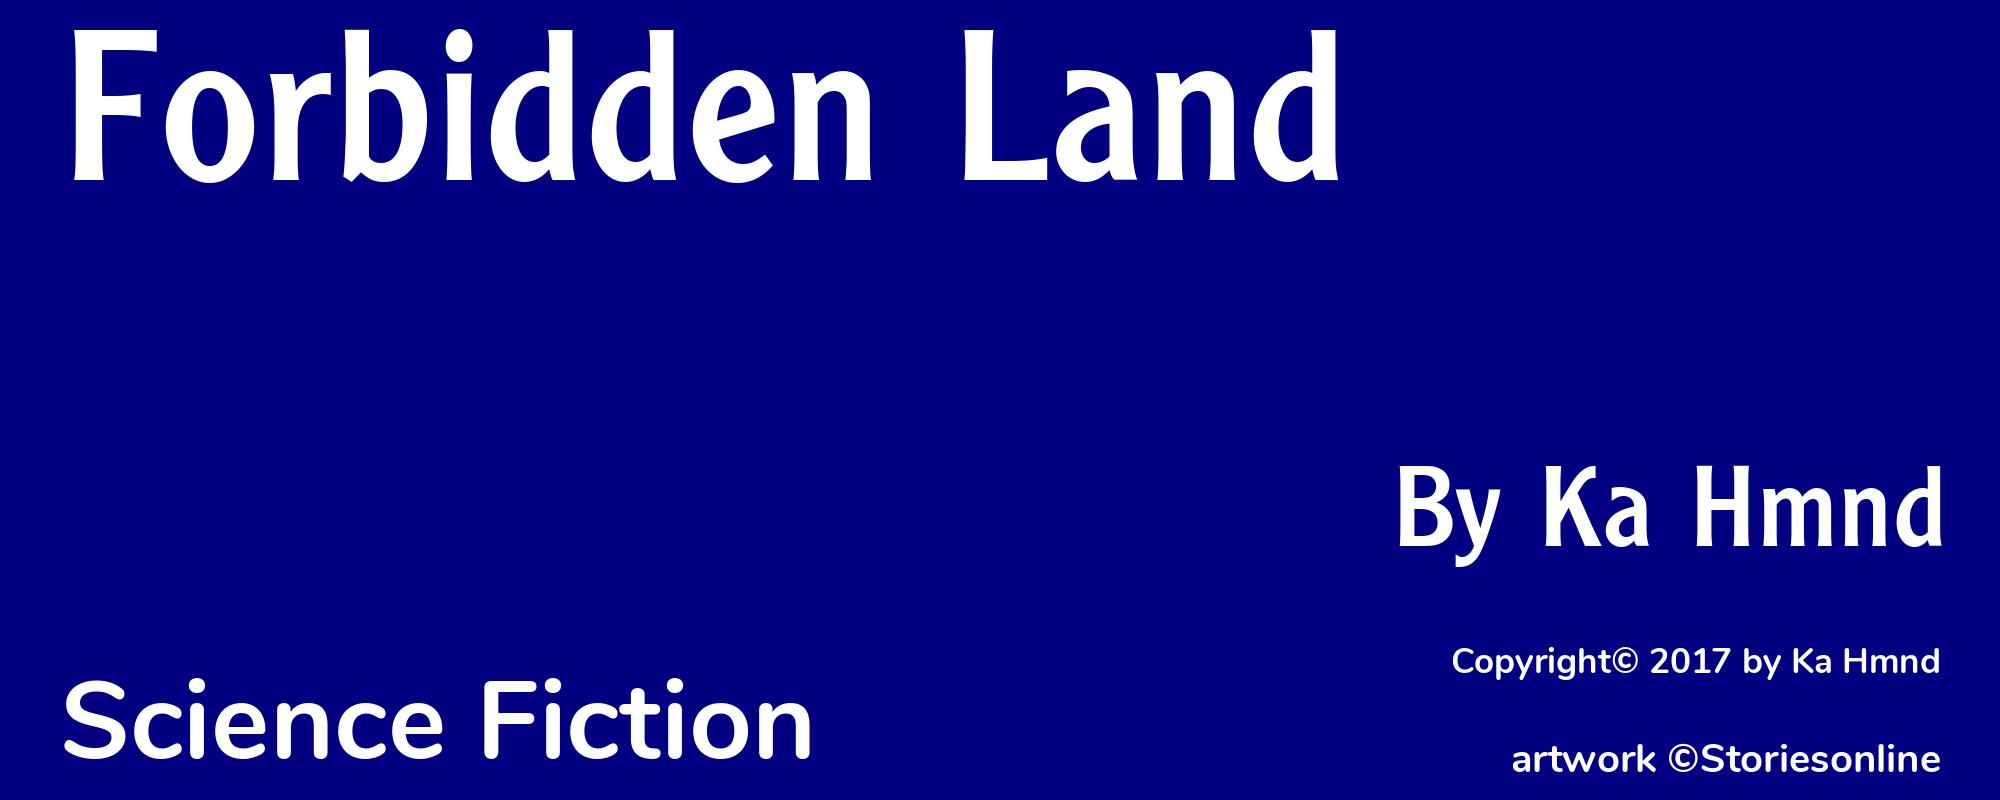 Forbidden Land - Cover